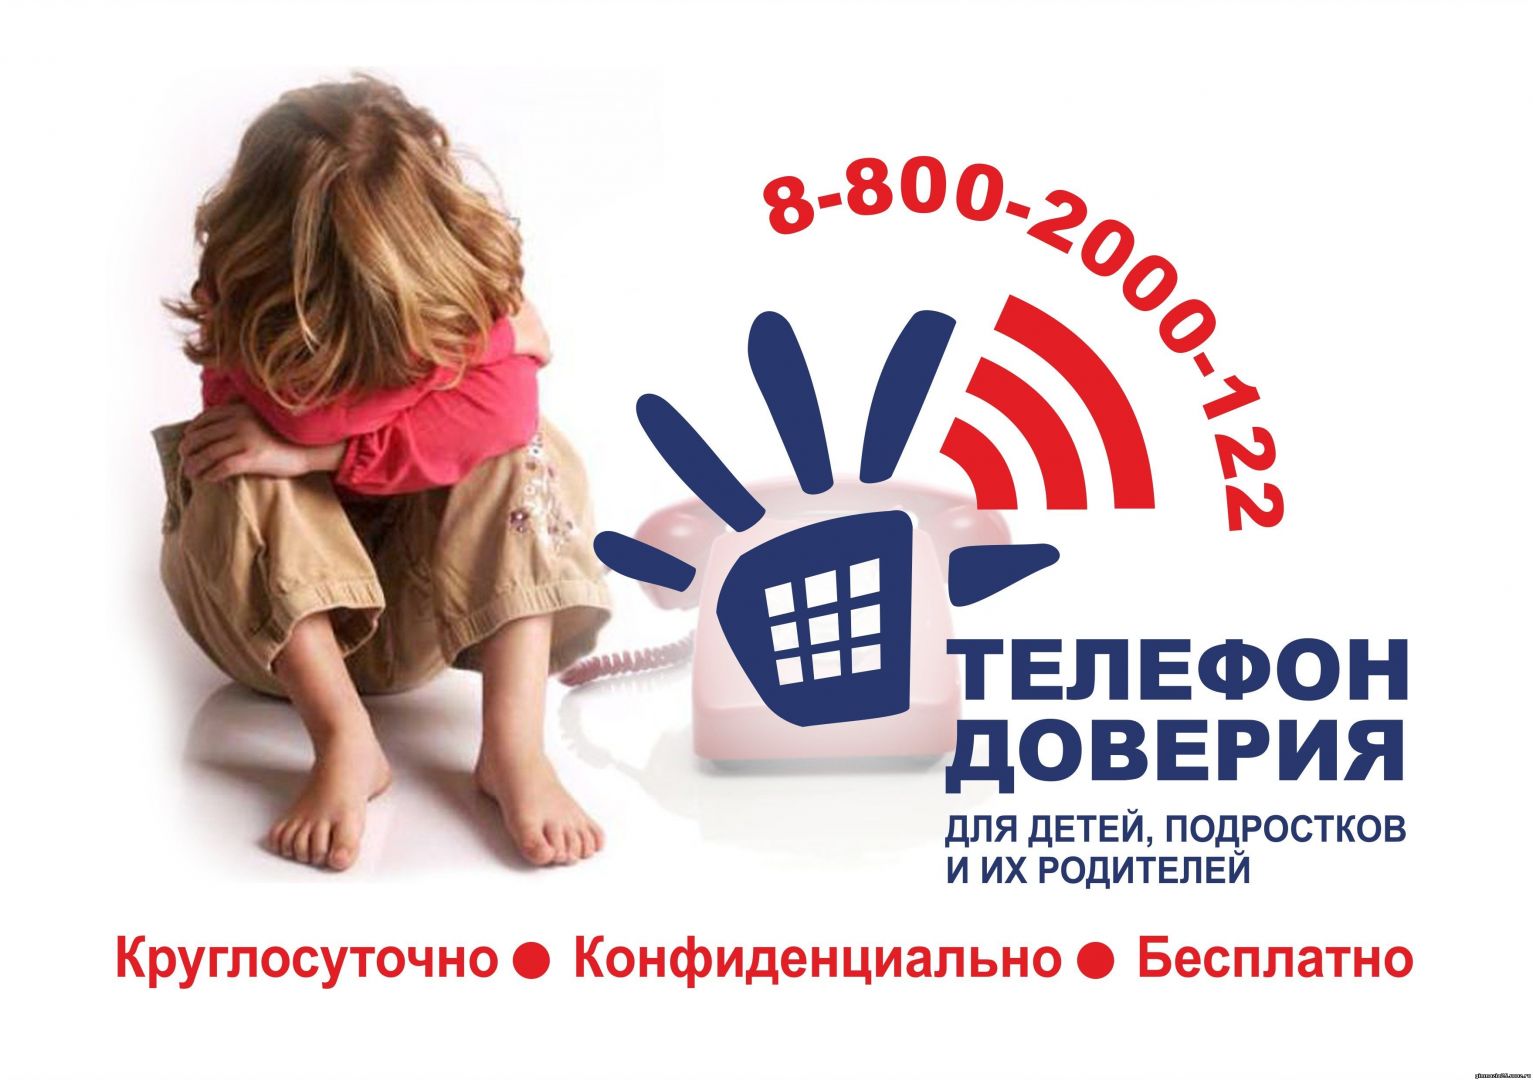 Итоги работы Детского телефона доверия Центра экстренной психологической помощи МГППУ за 2018 год